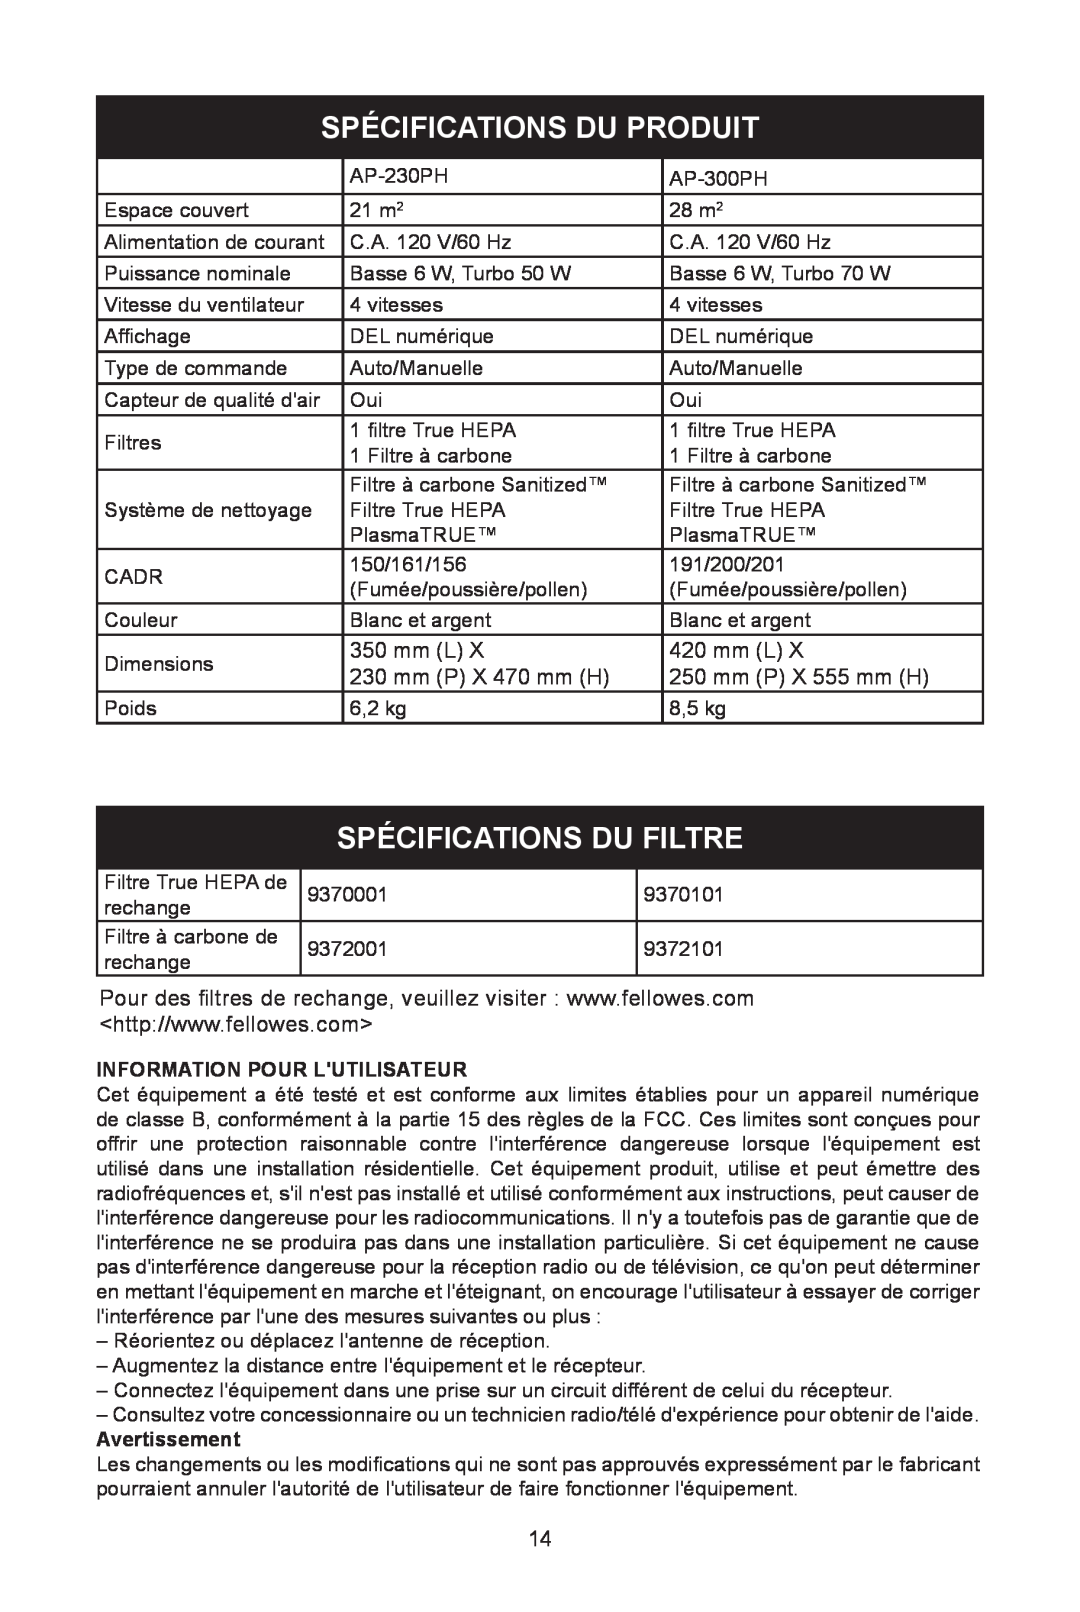 Fellowes AP-300PH, AP-230H Spécifications Du Produit, Spécifications Du Filtre, mm L, mm P X 470 mm H, mm P X 555 mm H 